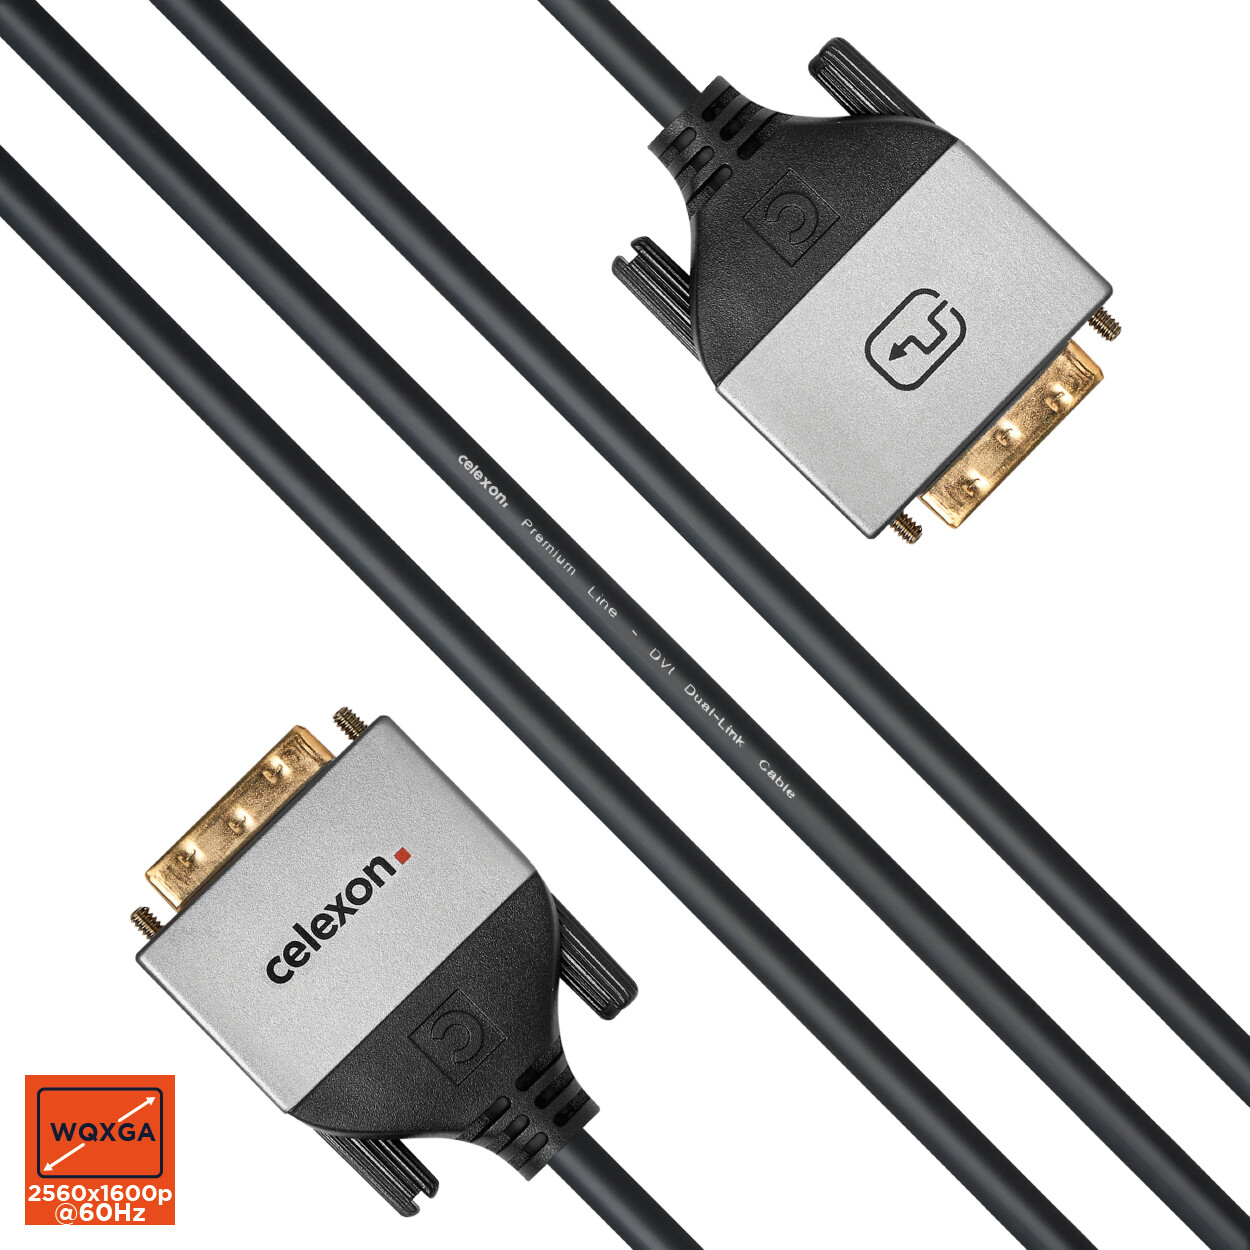 celexon-DVI-Dual-Link-Kabel-5-0m-Professional-Line